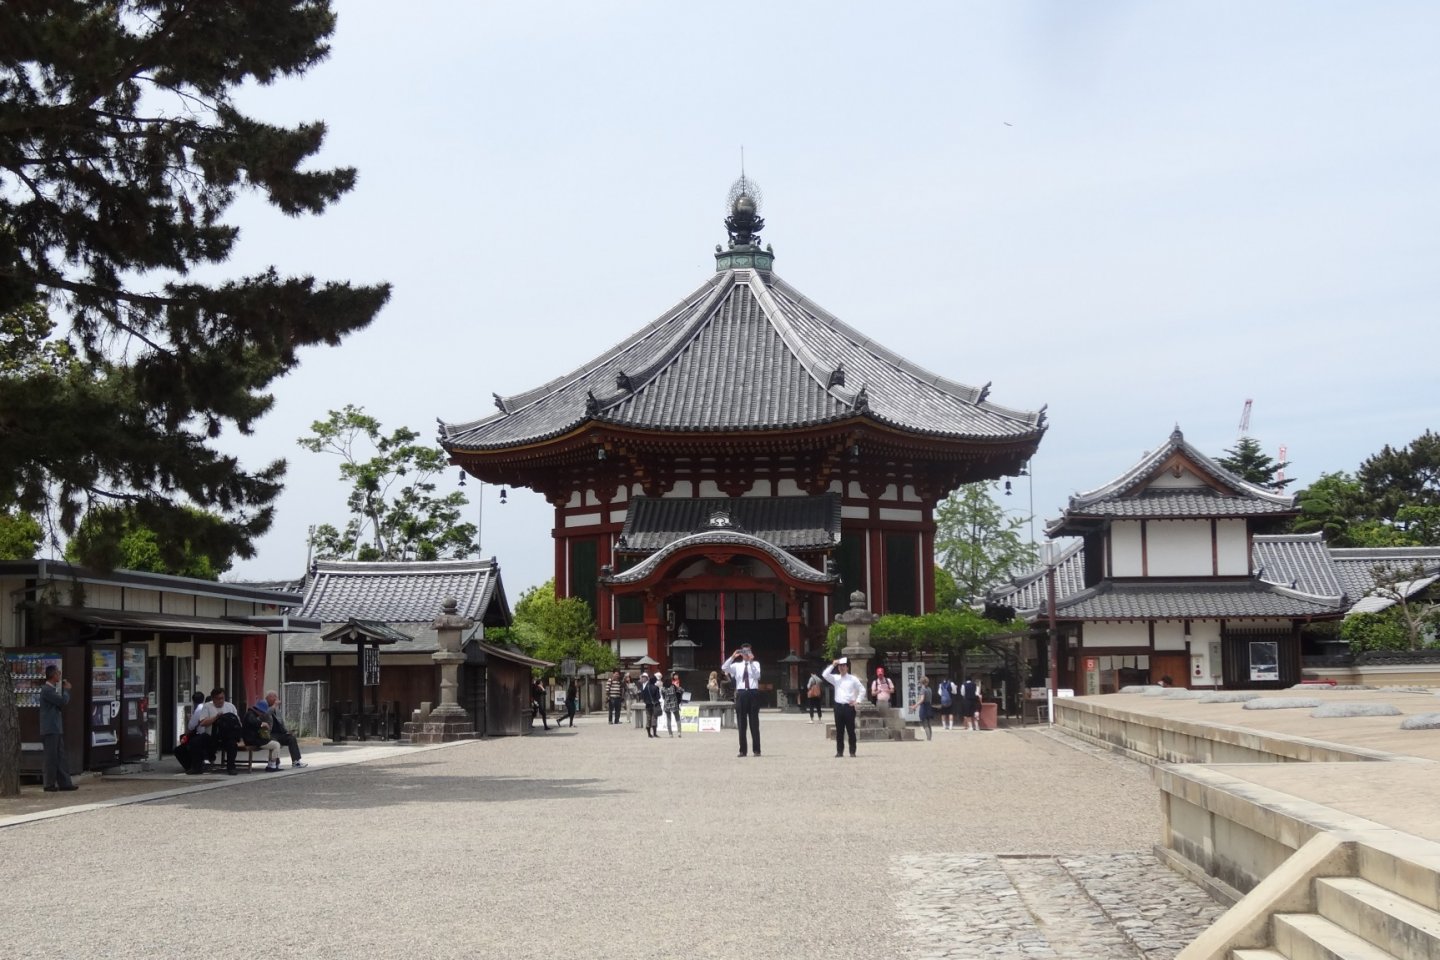 วัดโคะฟุกุจิ (Kōfuku-ji) วัดที่งดงามและเก่าแกของนารา ซึ่งเป็นจุดเริ่มต้นของนาราปาร์ค